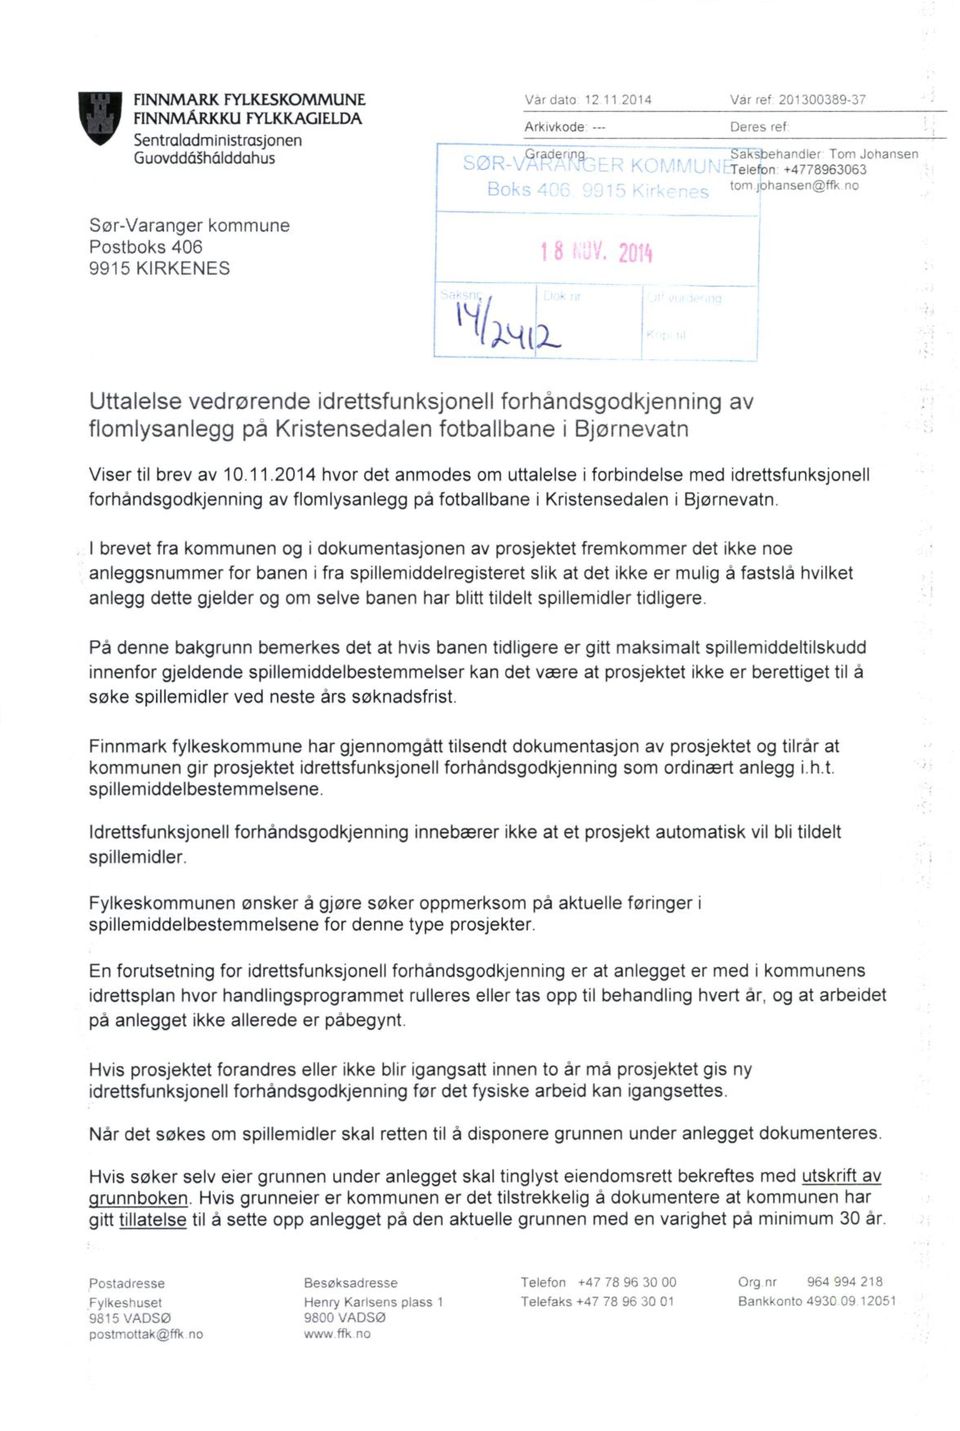 2014 hvor det anmodes om uttalelse i forbindelse med idrettsfunksjonell forhåndsgodkjenning av flomlysanlegg på fotballbane i Kristensedalen i Bjørnevatn.